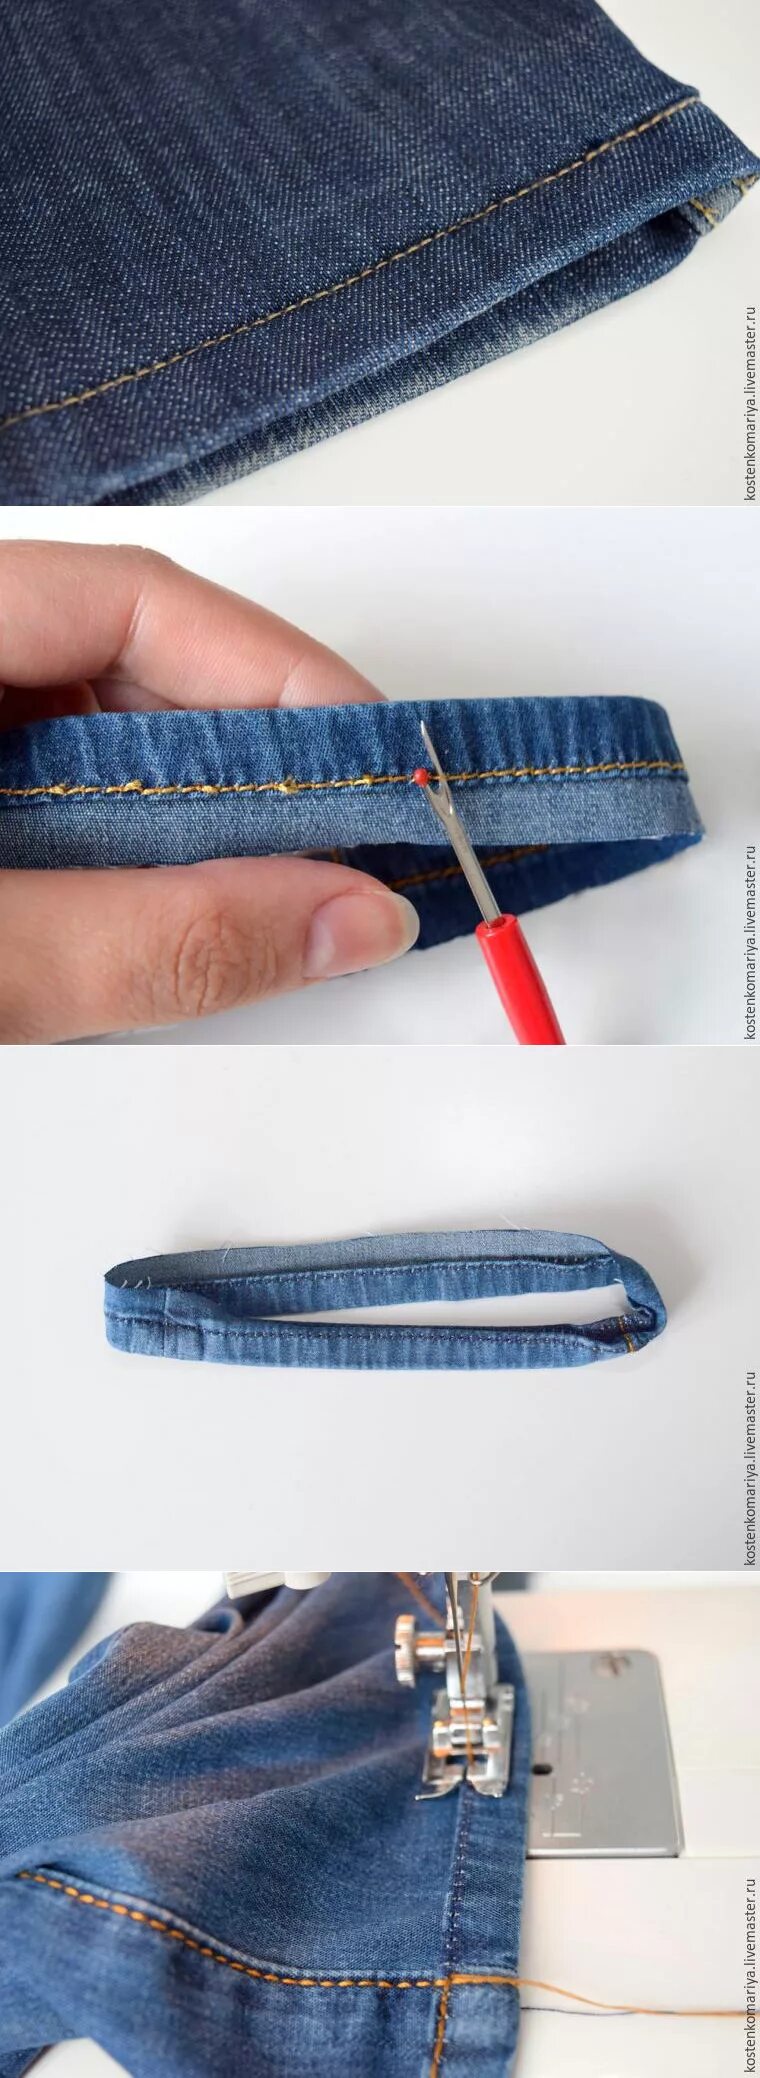 Как обрезать джинсы с сохранением фабричного шва. Подшить джинсы. Подшивка джинс. Укорачивание джинсов. Подгиб джинс.